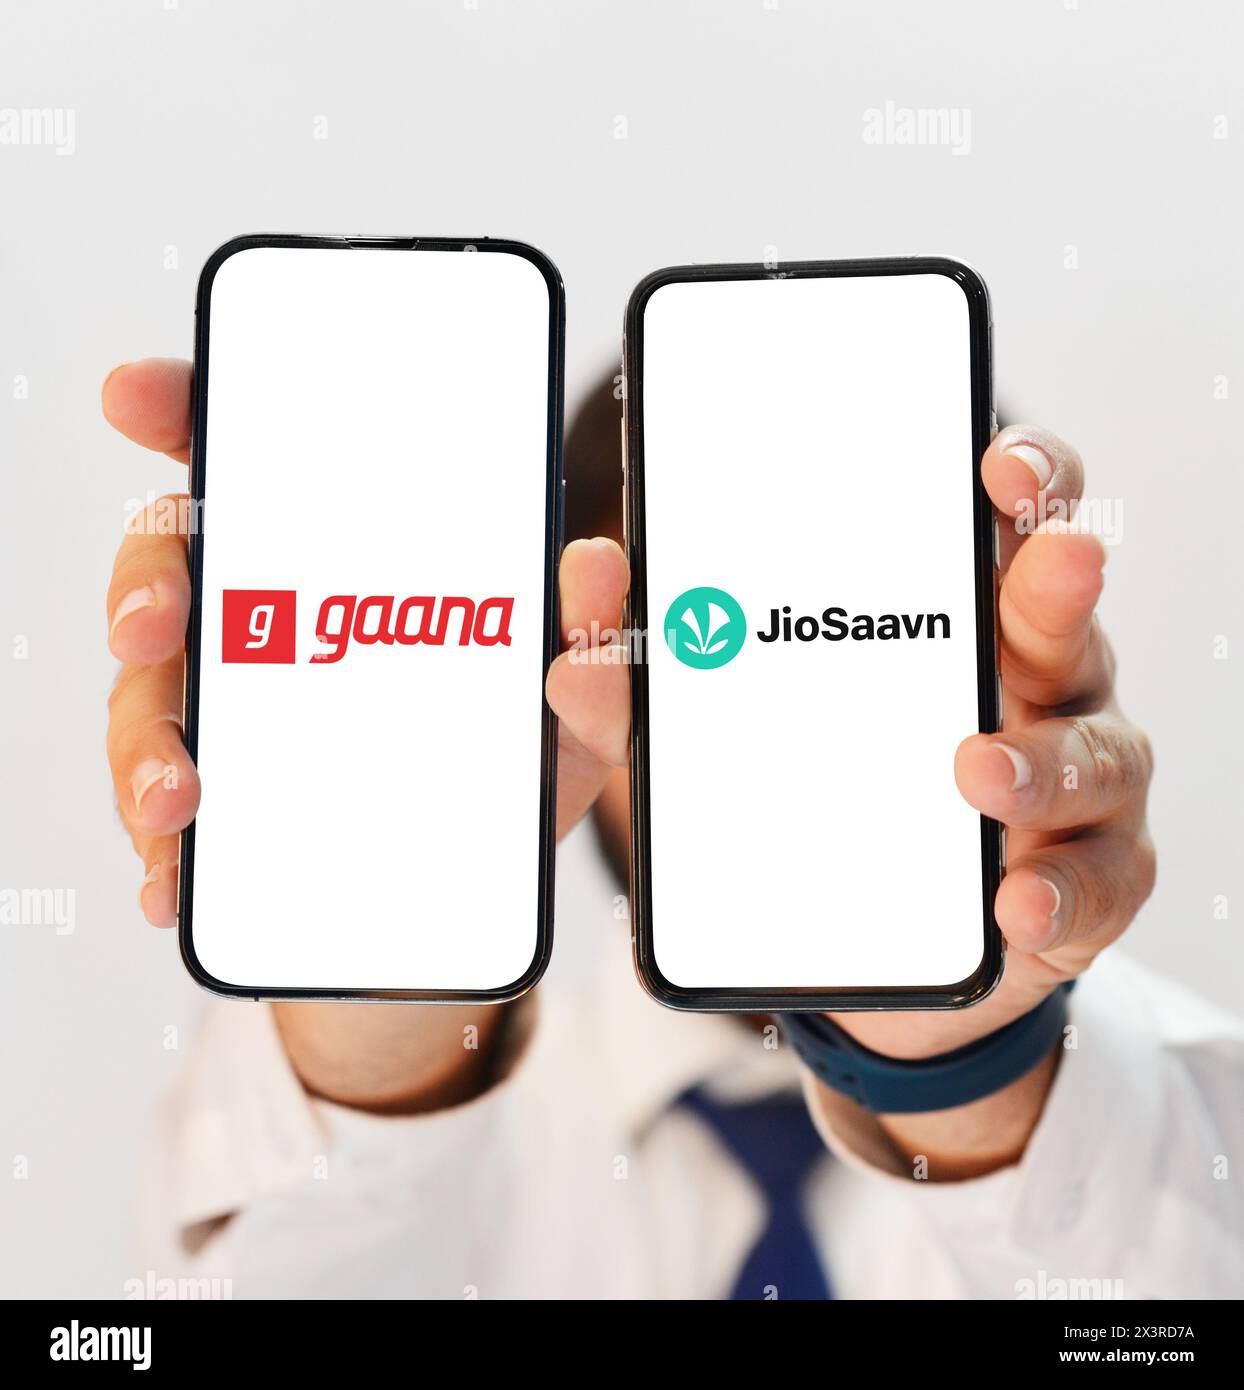 Vergleich zwischen Gaana und JioSaavan Music Listening App, um das Beste herauszufinden, gezeigt auf zwei verschiedenen Smartphone-Bildschirmen redaktionellen Hintergrund Stockfoto